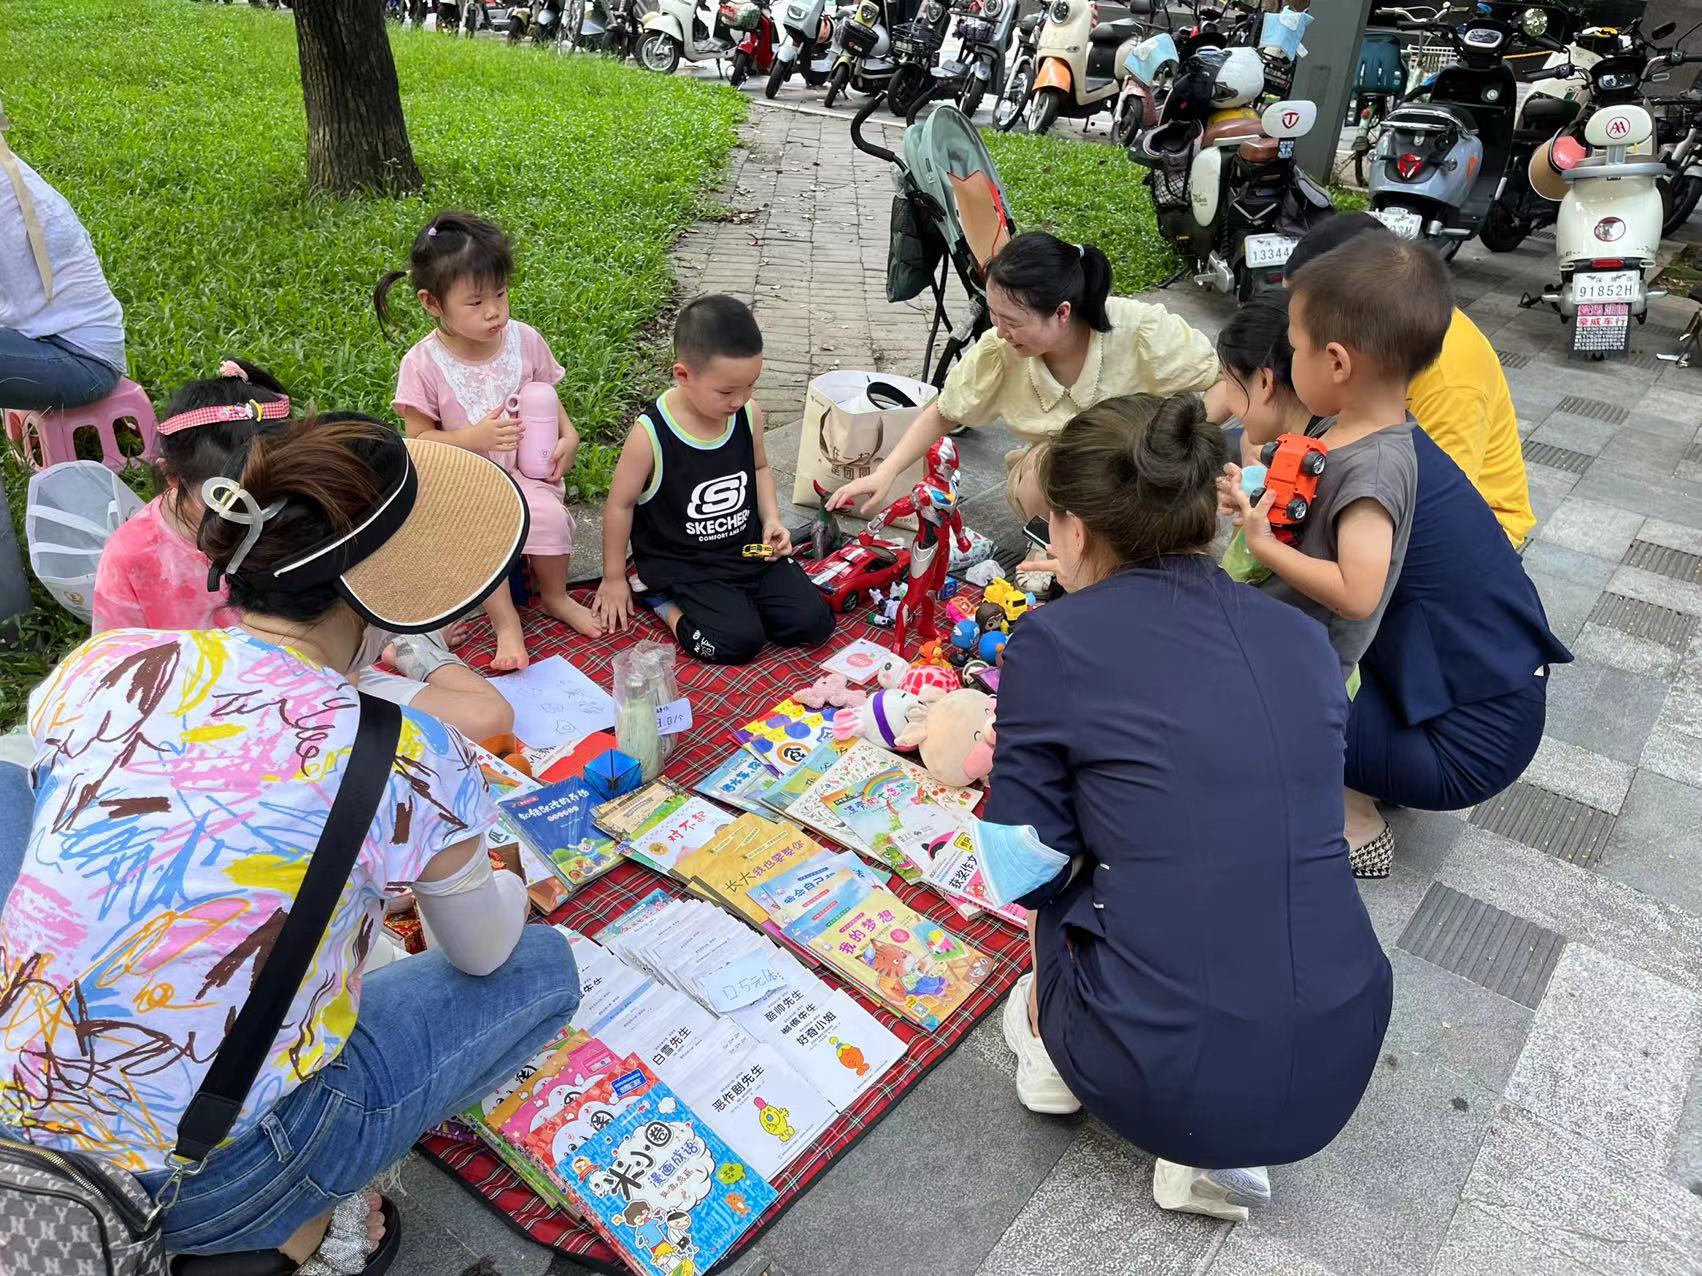 翠竹街道民新社区开展亲子家庭跳蚤市场活动